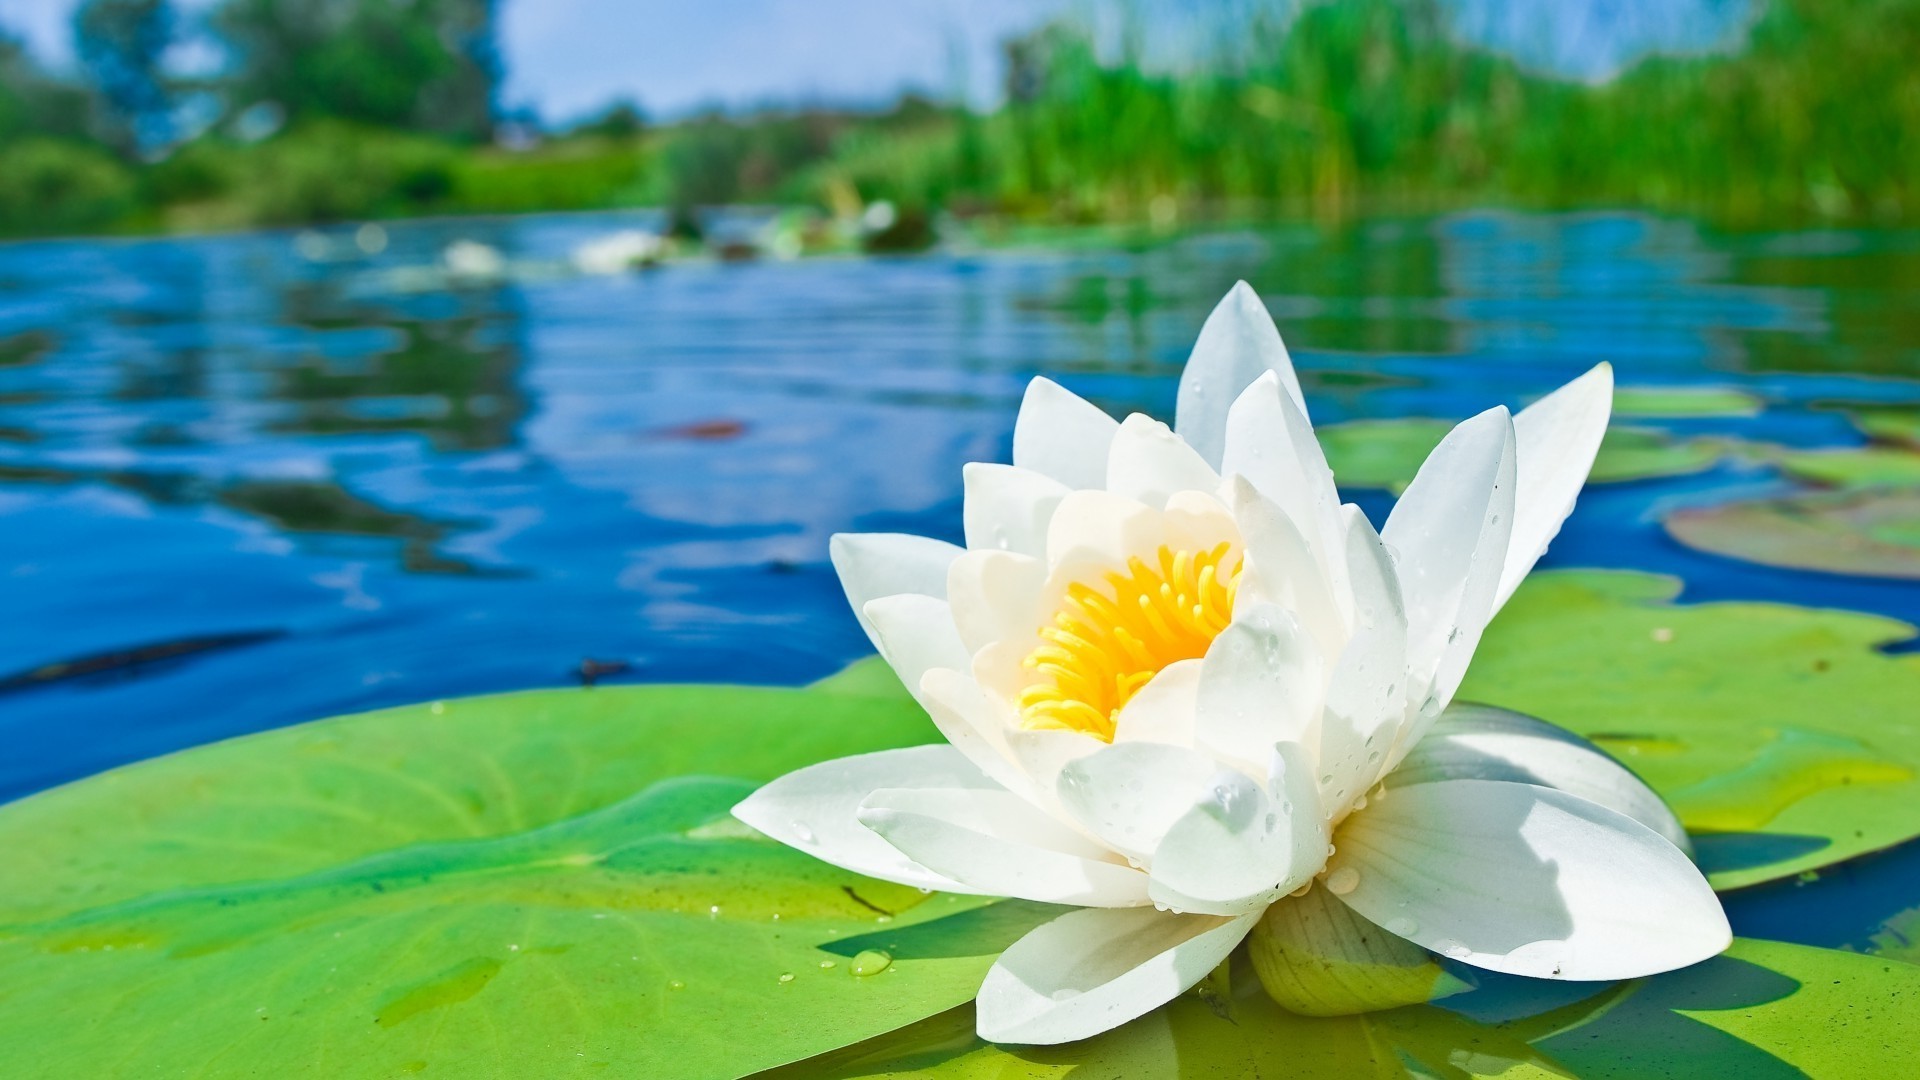 цветы лотос бассейн природа лето тропический лист цветок лили флора воды экзотические медитация красивые дзен водный плавание блюминг кувшинка сад